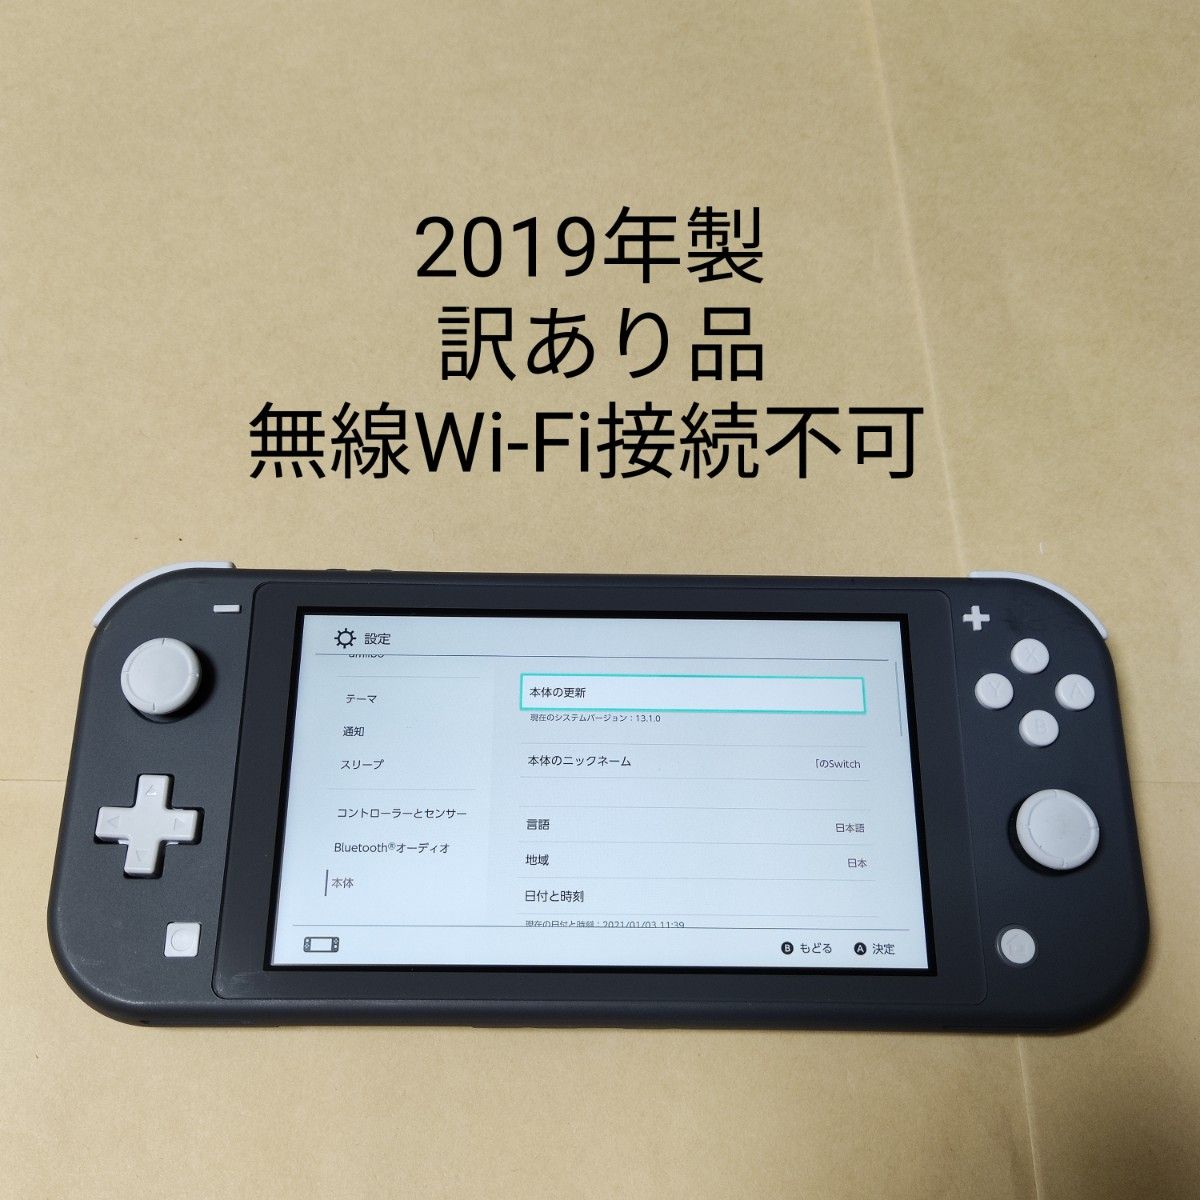 訳あり品 無線Wi-Fi不可 Nintendo Switch Lite グレー 本体のみ 2019年製